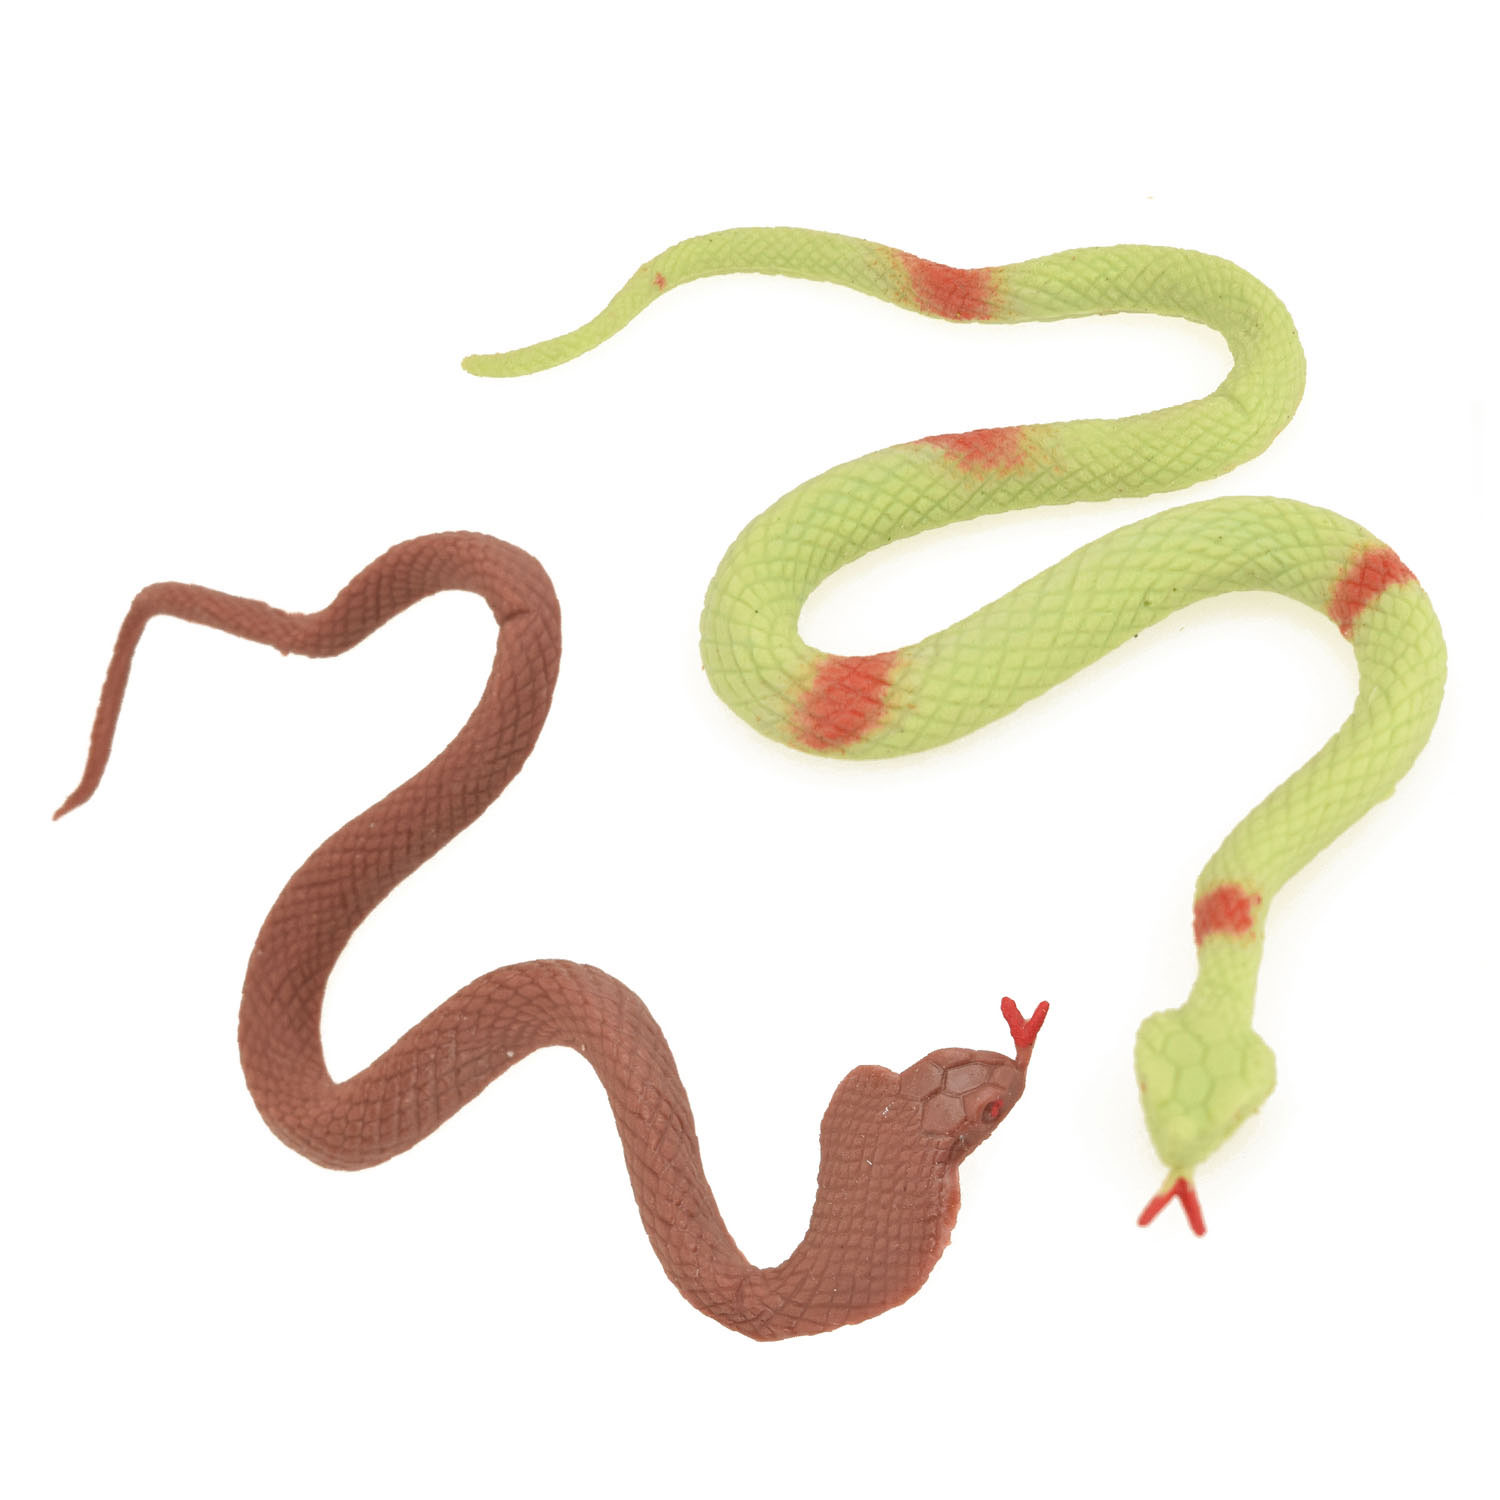 Serpents réalistes extensibles, 3 pcs.